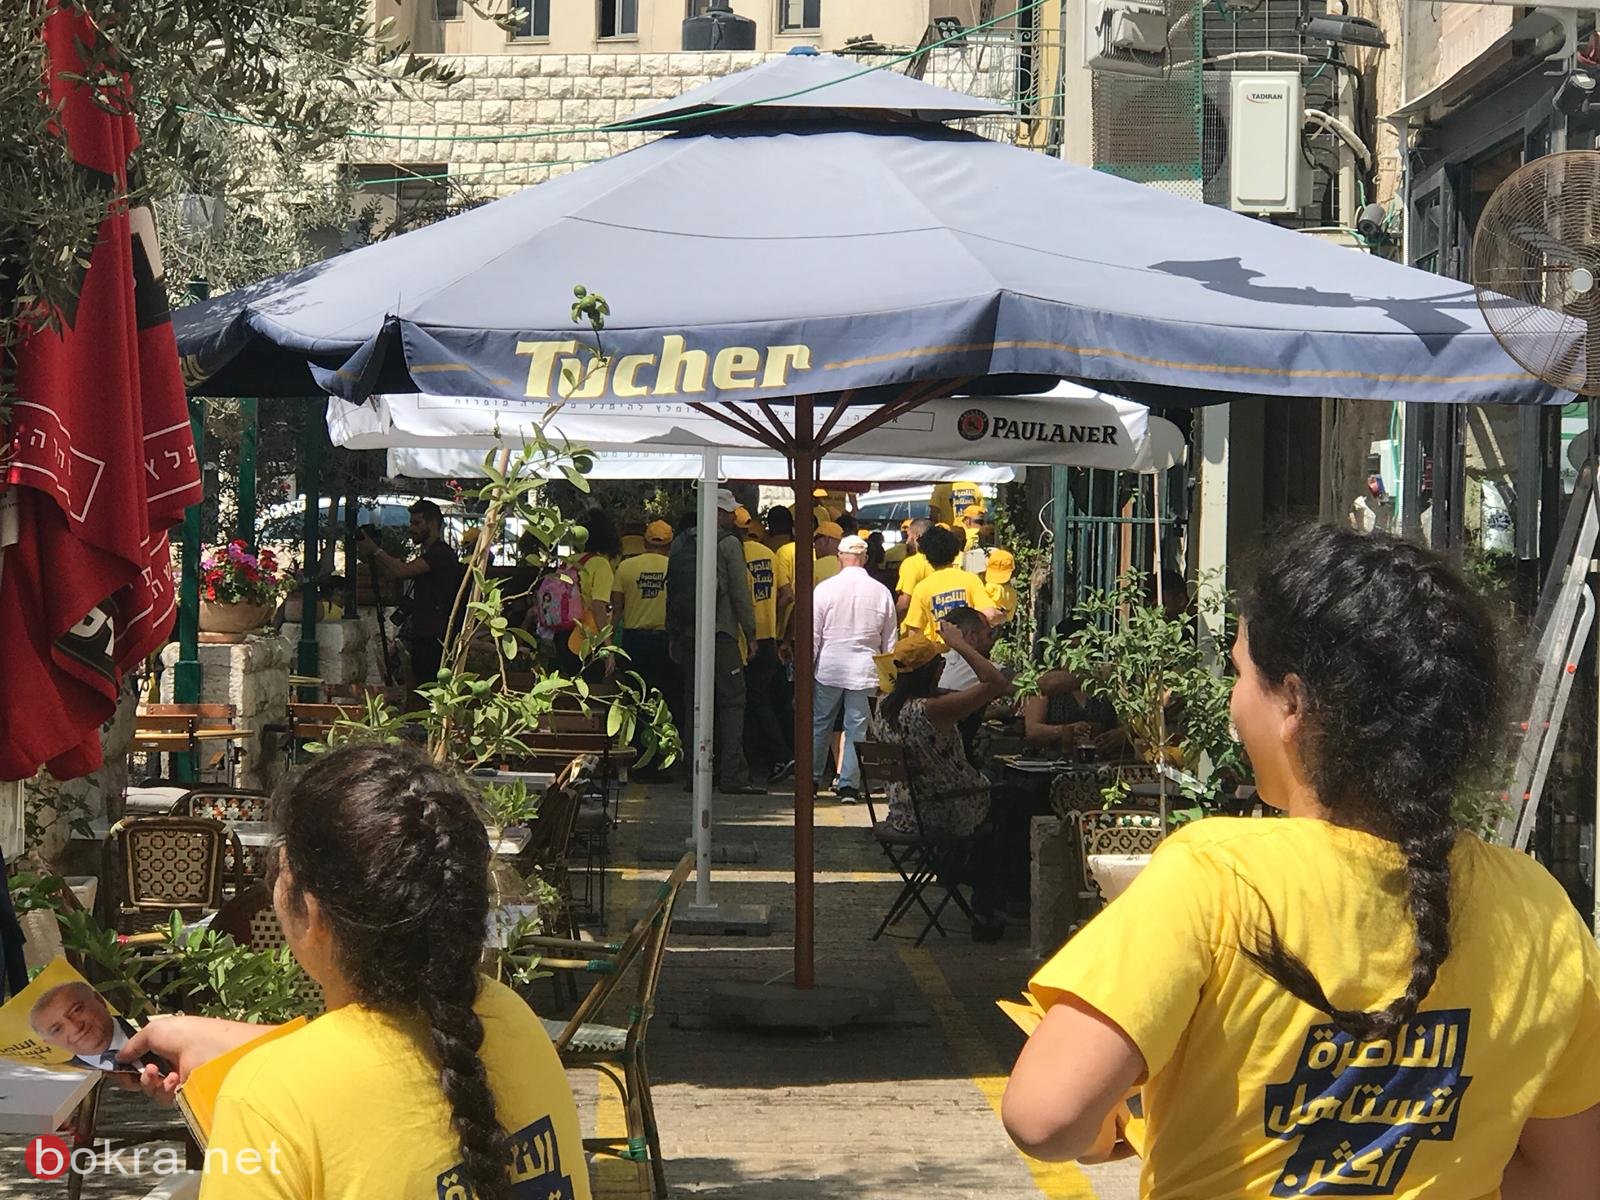 وليد عفيفي وداعموه يوزعون المناشير الانتخابية في شوارع الناصرة-2